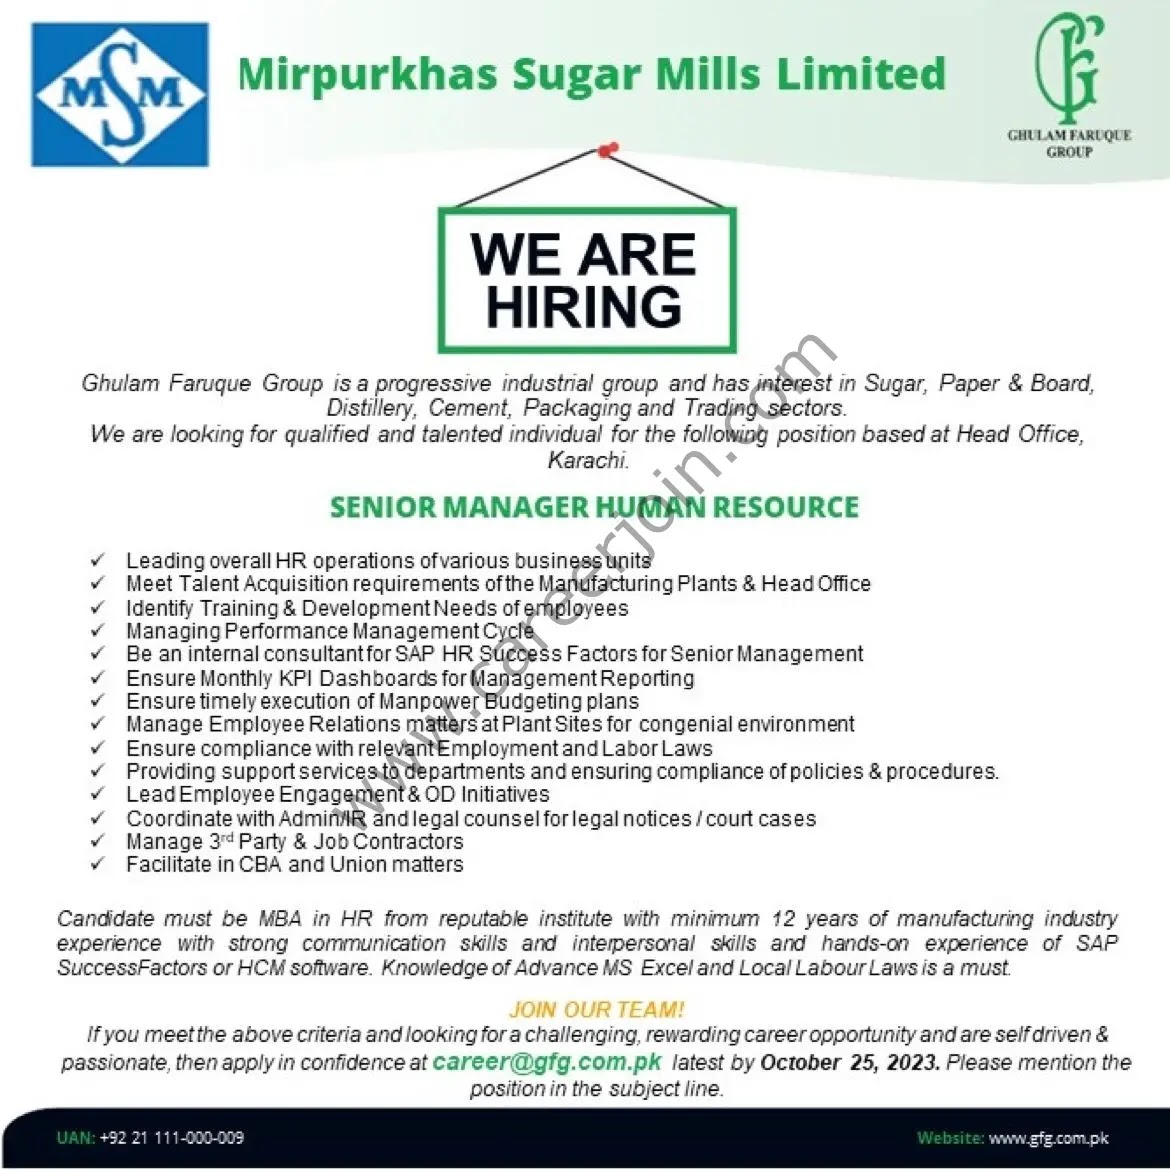 Jobs in Mirpurkhas Sugar Mills Limited